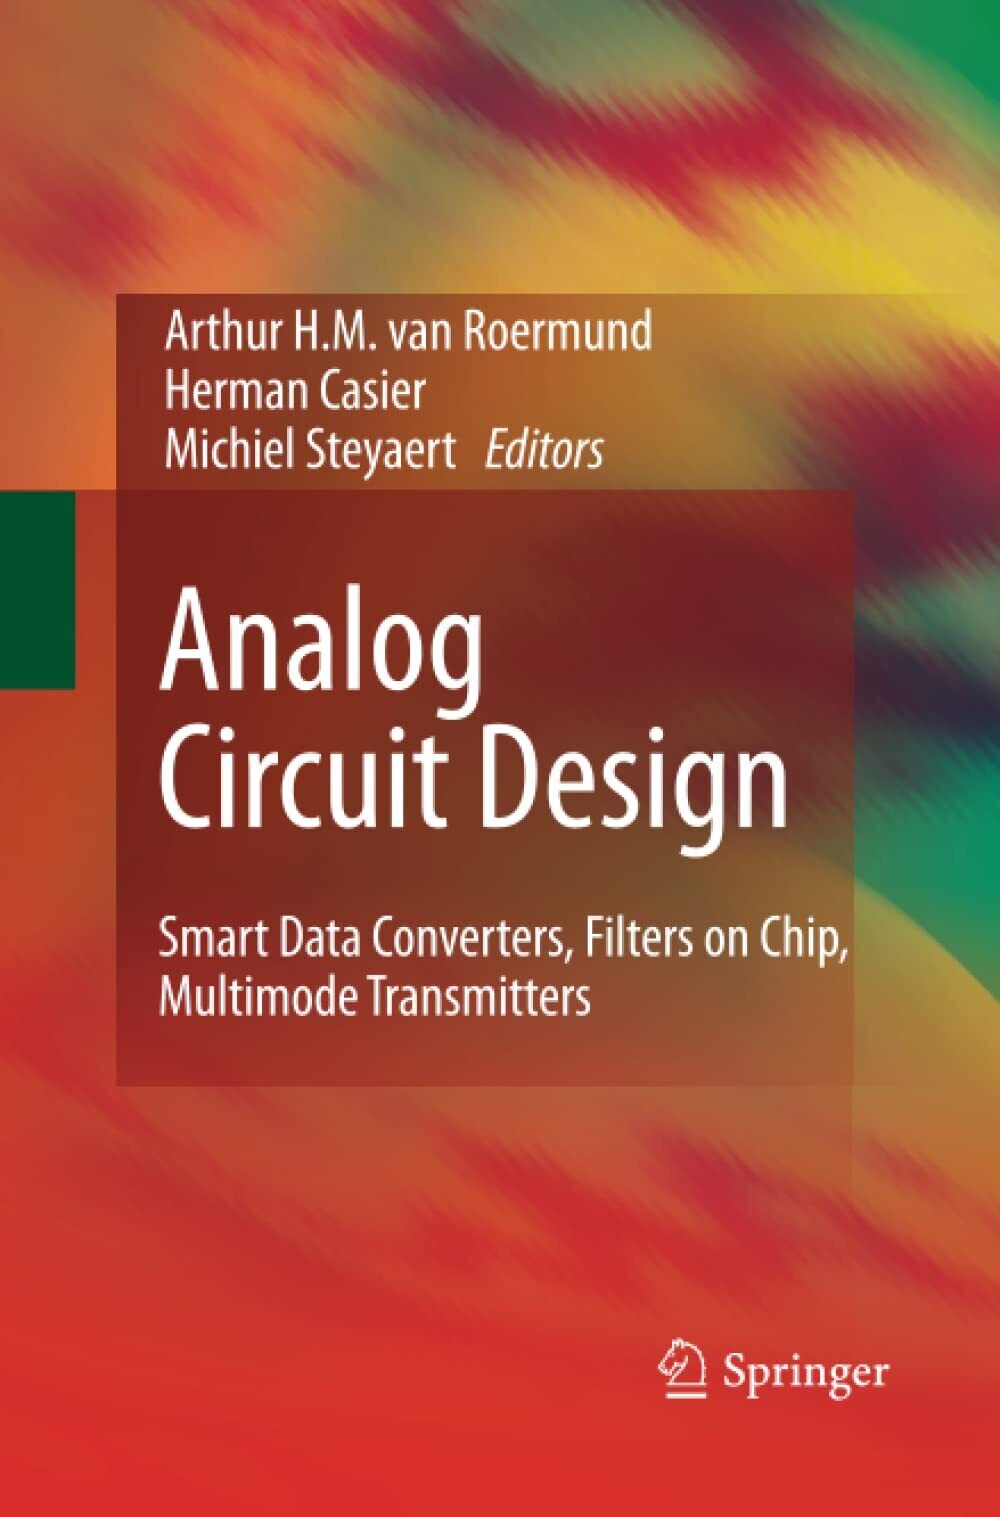 Analog Circuit Design - Arthur H.M. van Roermund - Springer, 2014